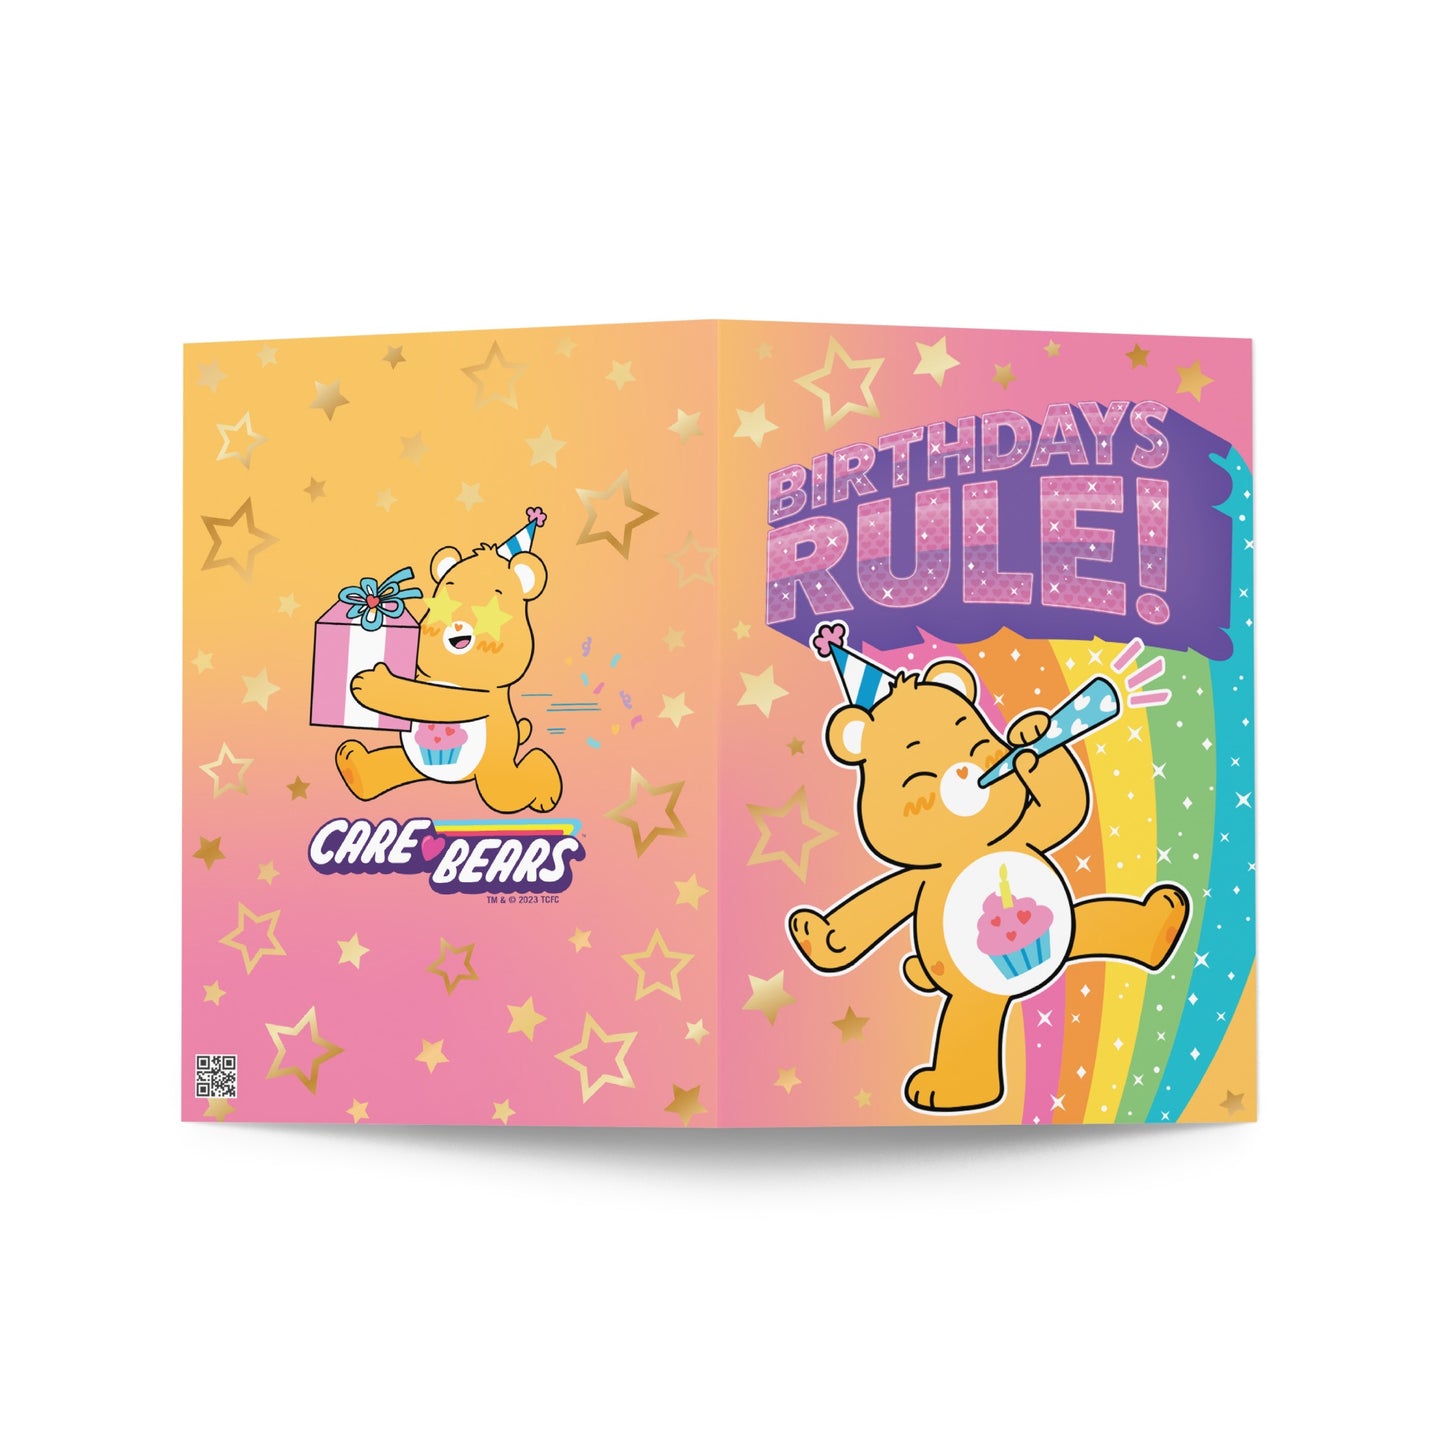 Care Bears Birthdays Rule Card